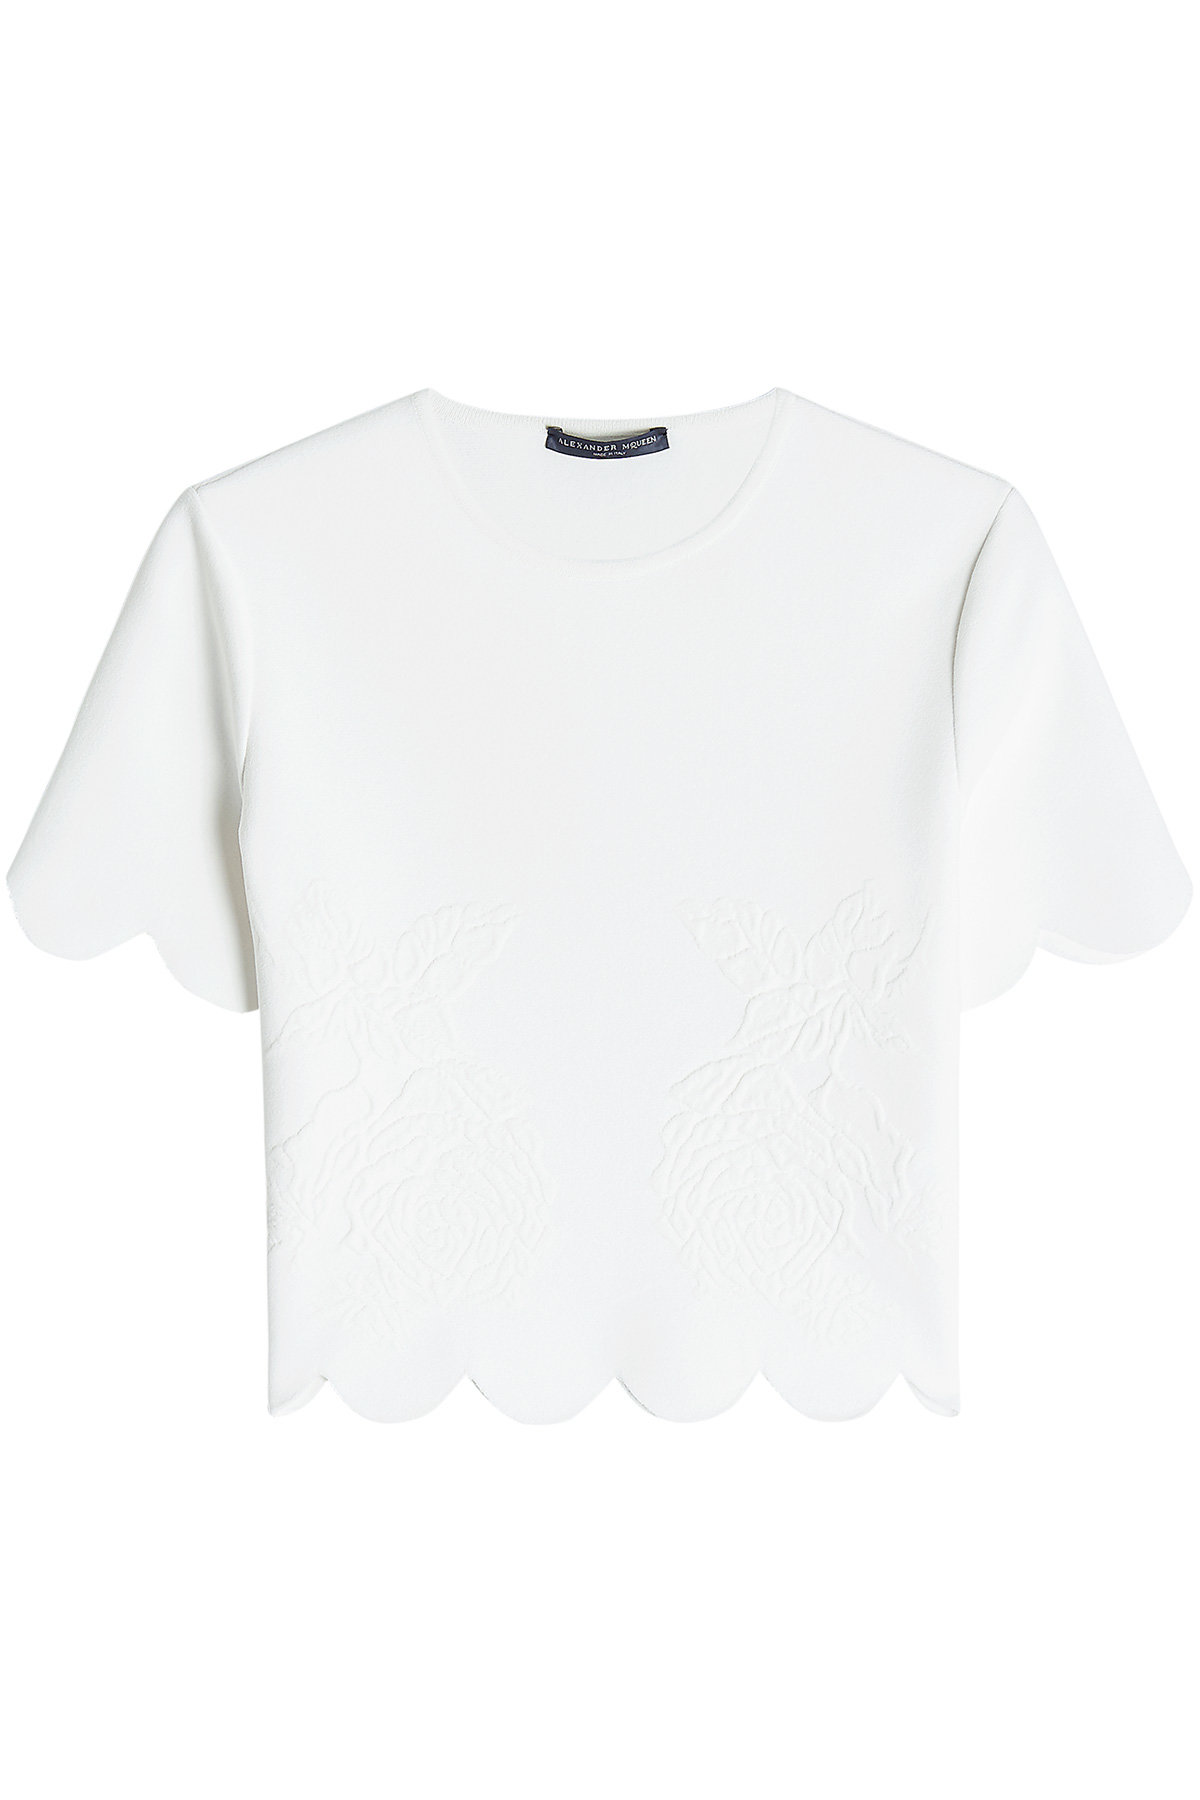 Alexander McQueen - T-Shirt with Scalloped Hem